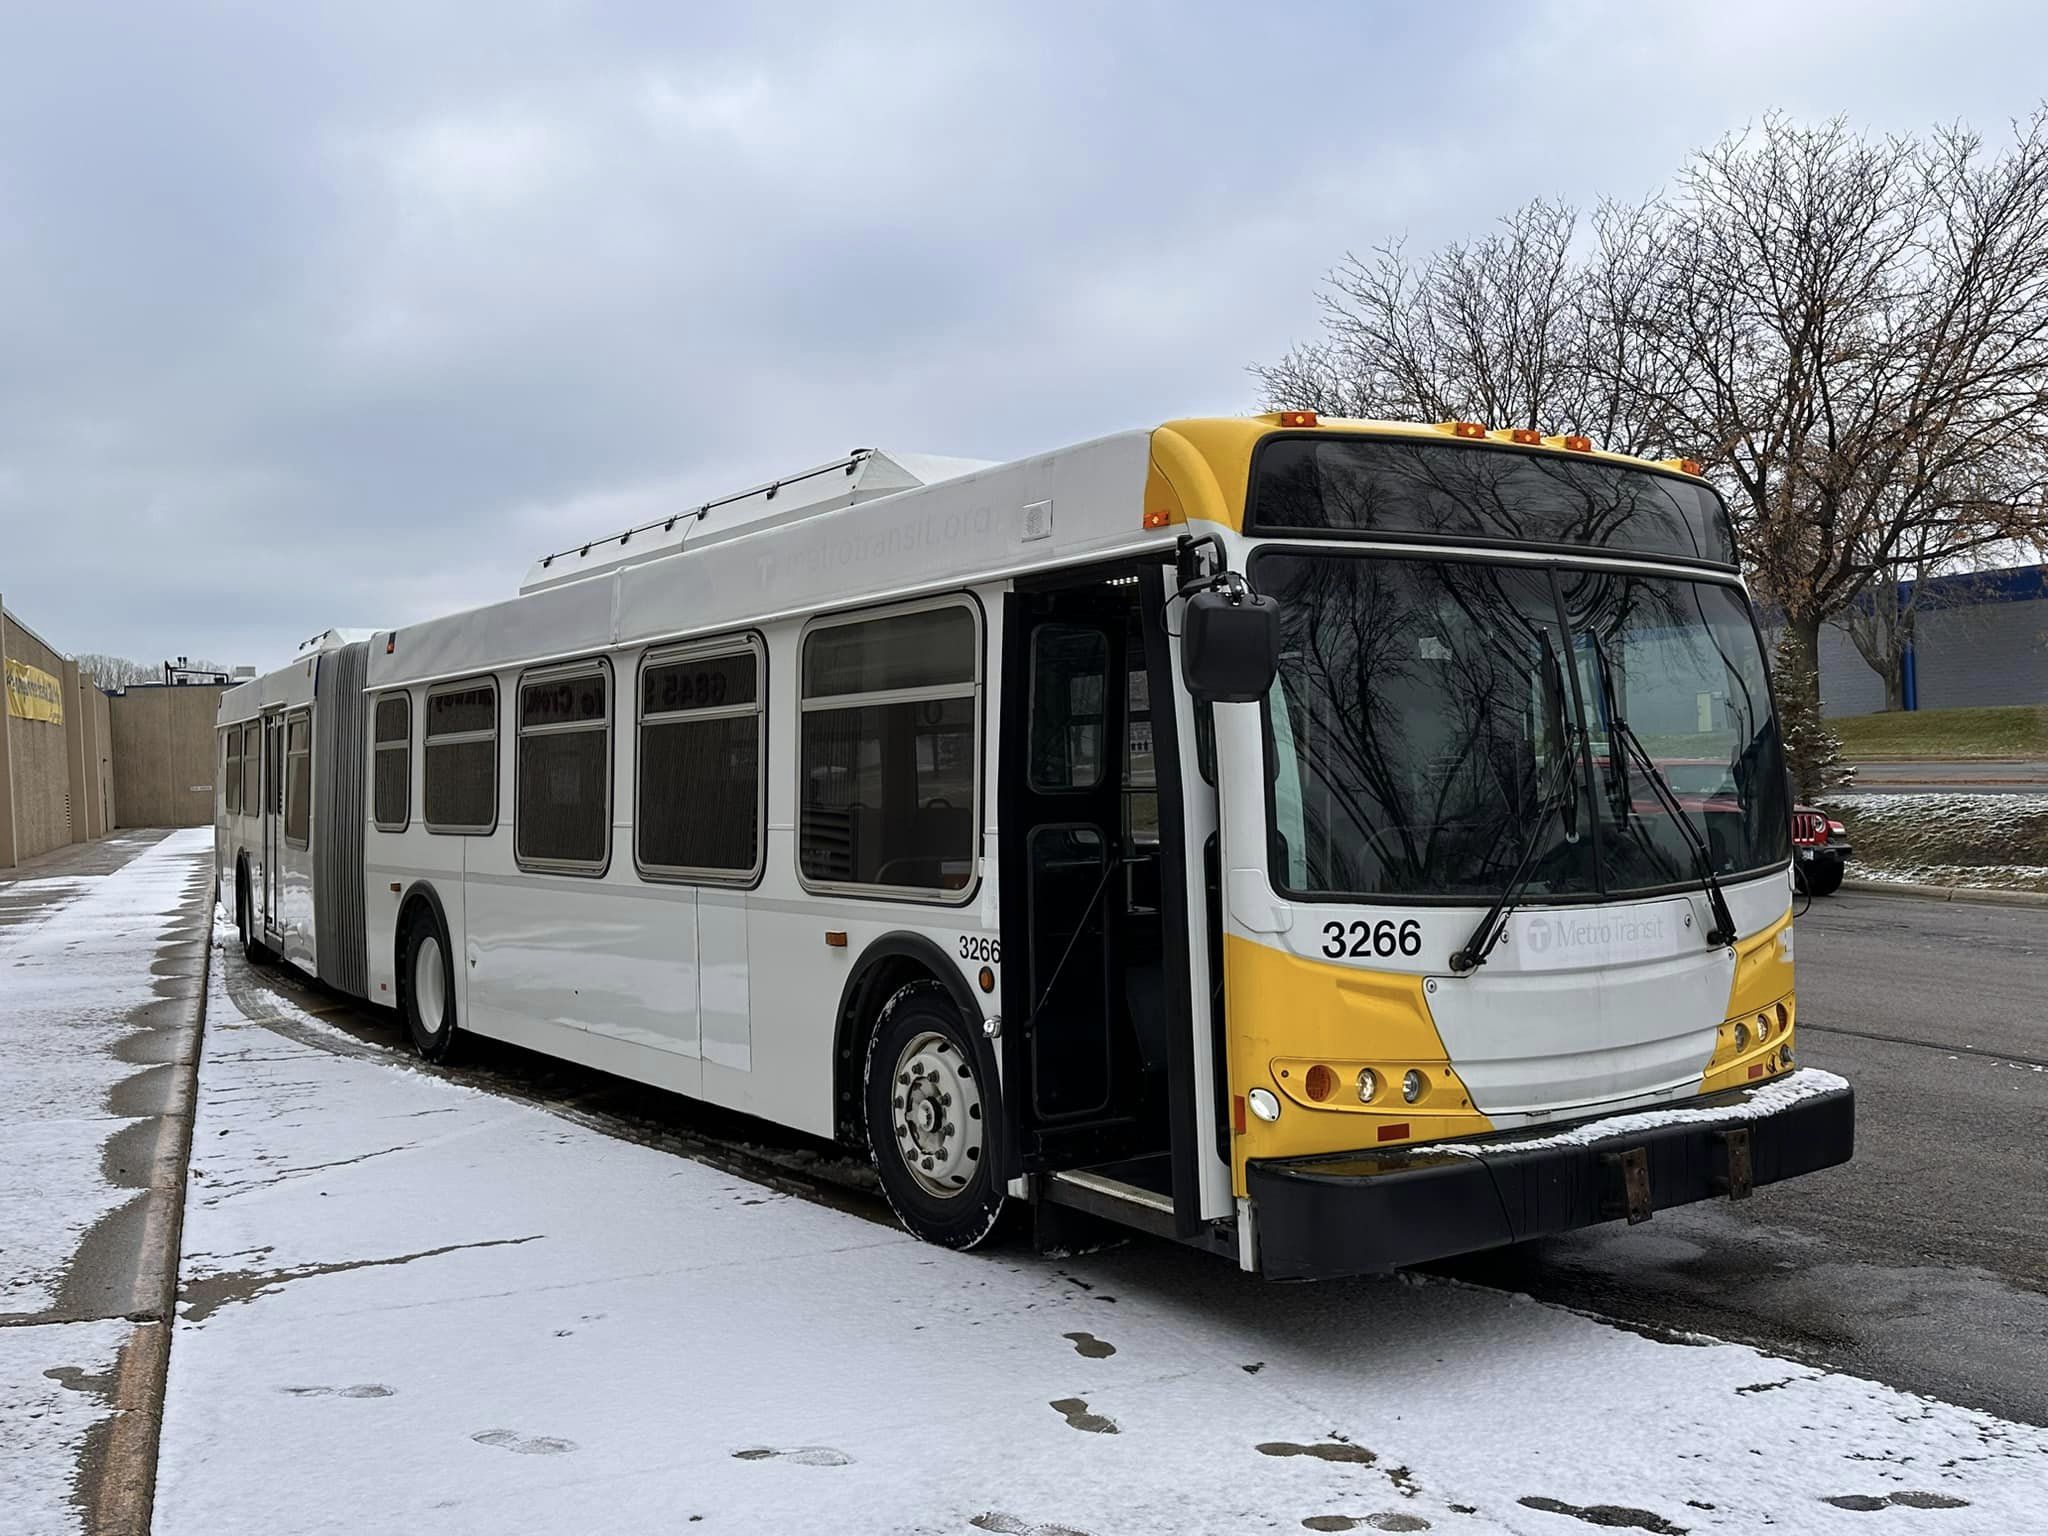 An extended bus on a snowy street